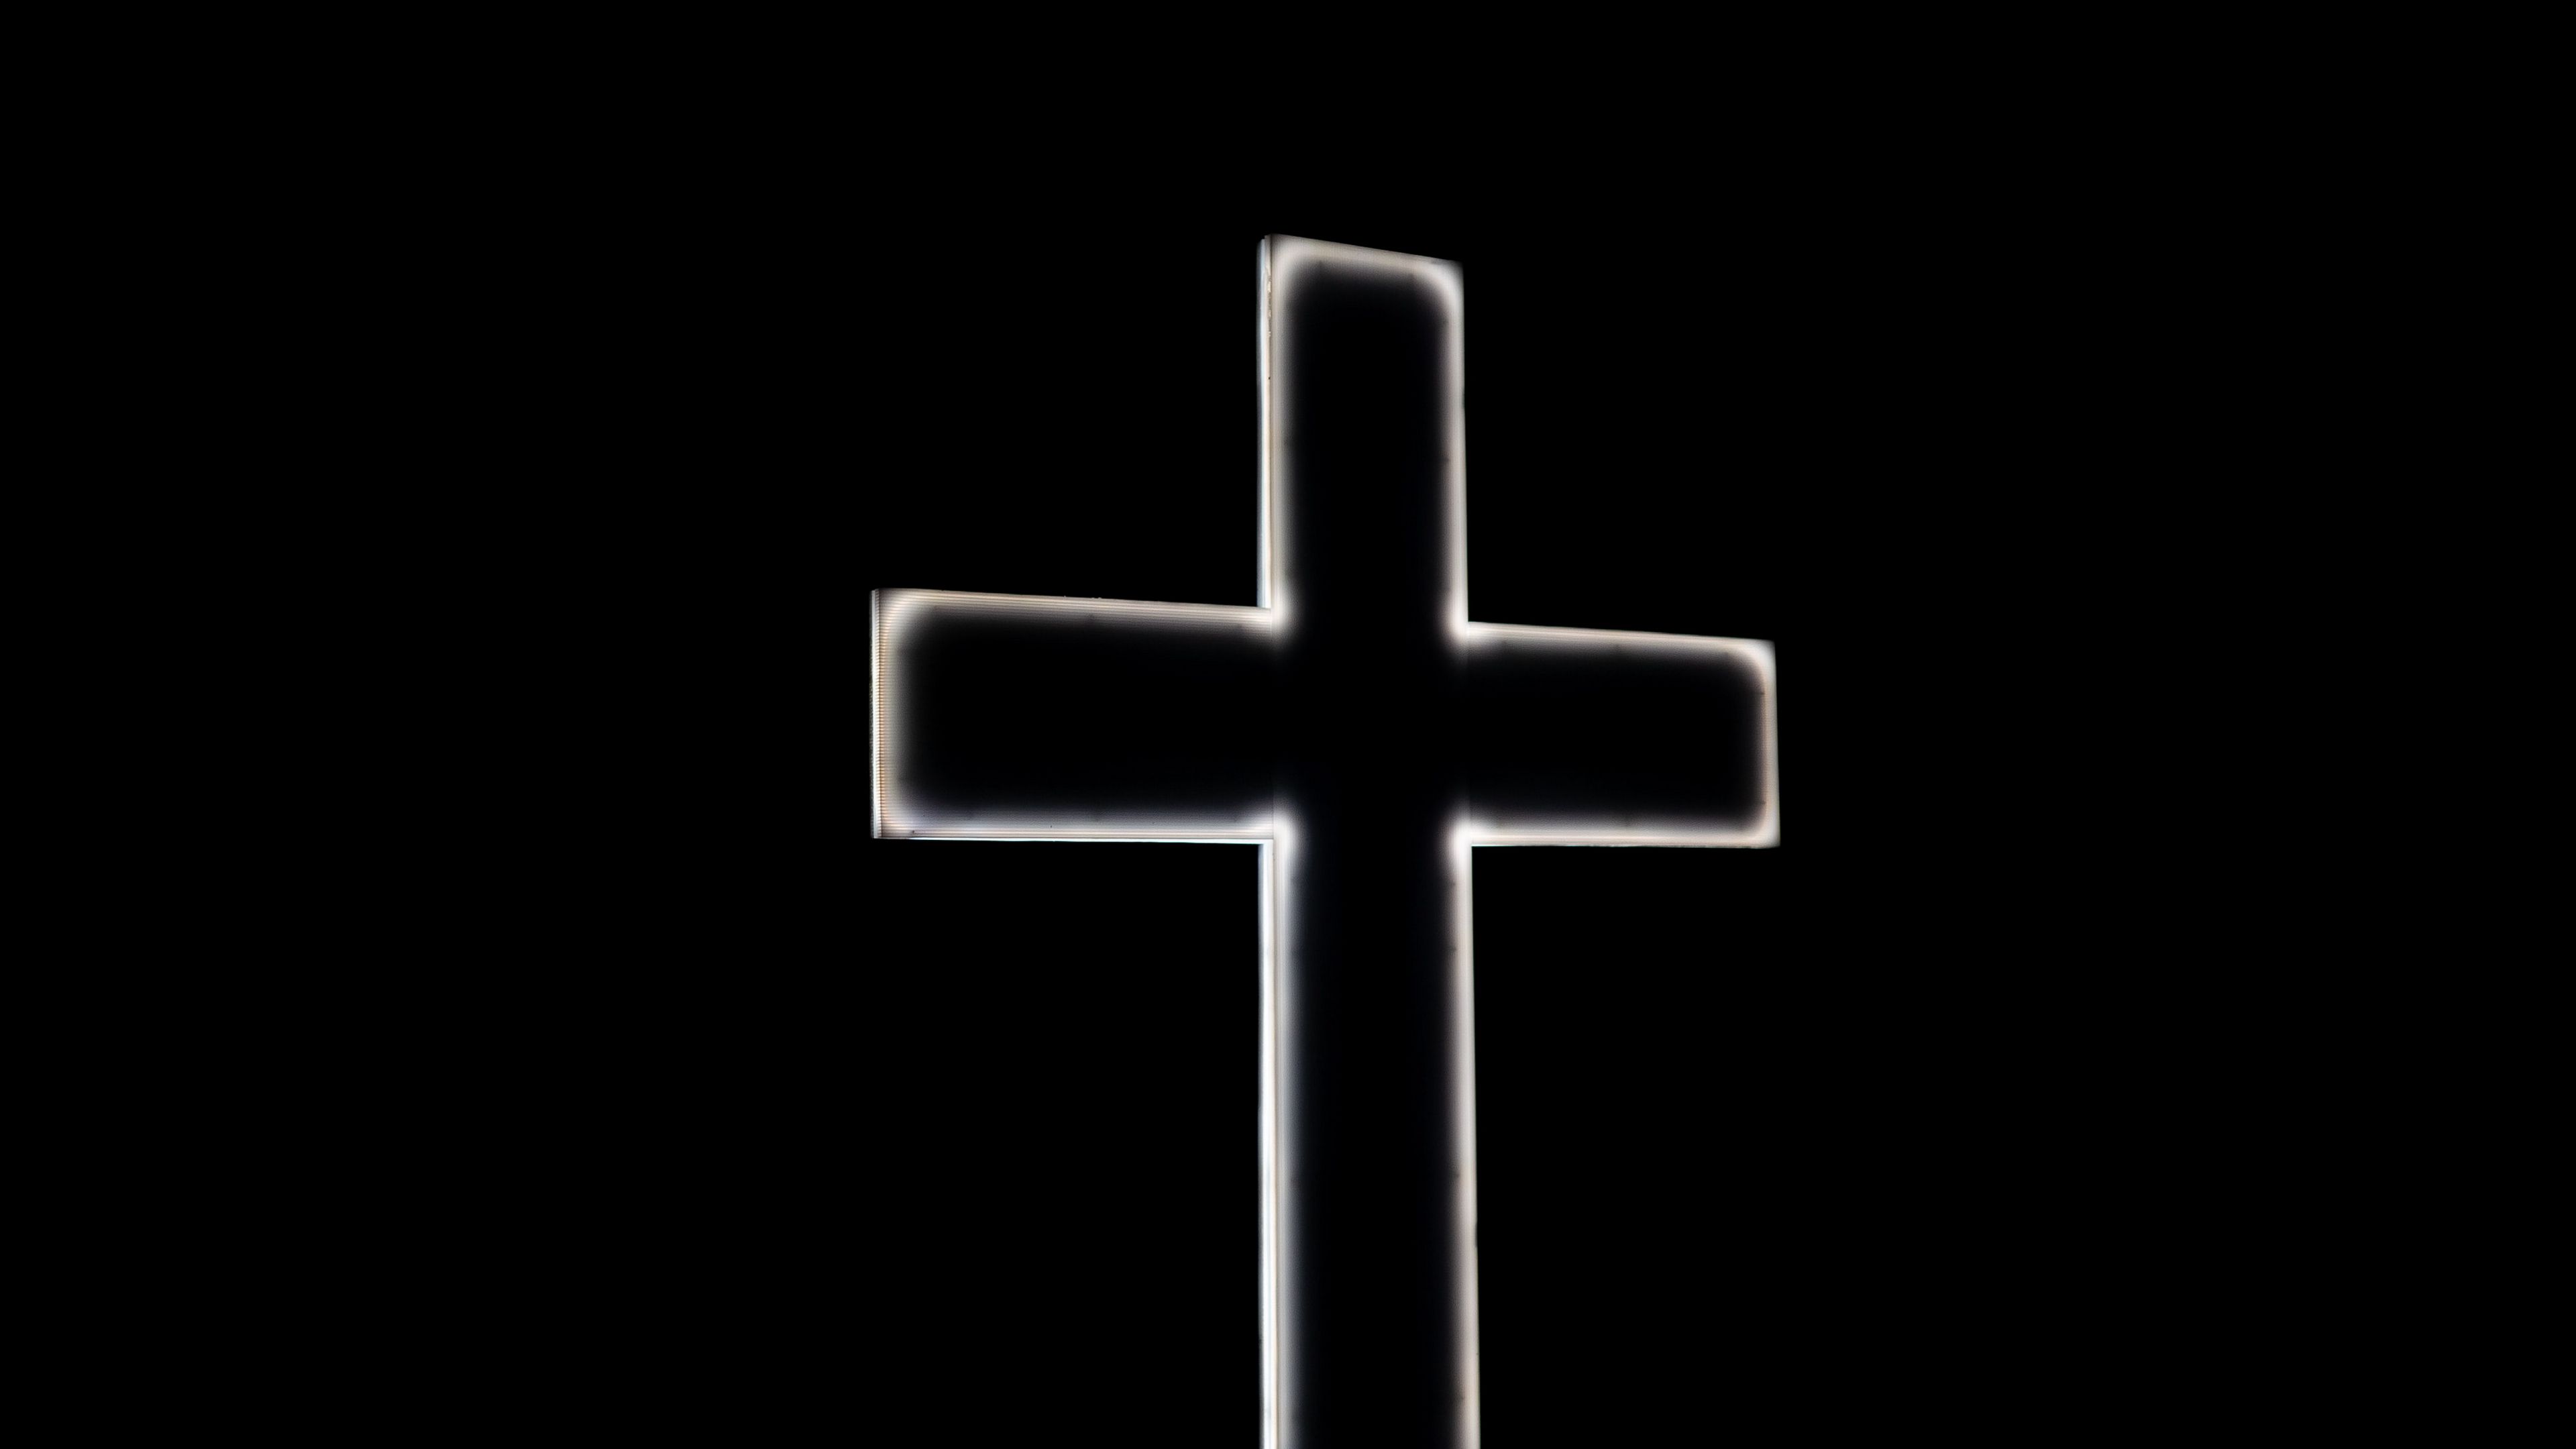 Wallpaper đen, đèn neon, tôn giáo: Những hình nền đen với đèn neon sẽ mang đến cho bạn một không gian đầy sức sống và cảm hứng. Nếu bạn đang tìm kiếm một hình nền tôn giáo đầy ý nghĩa, thì những hình ảnh đen-đèn neon sẽ là sự lựa chọn hoàn hảo. Hãy tìm hiểu và trải nghiệm ngay!